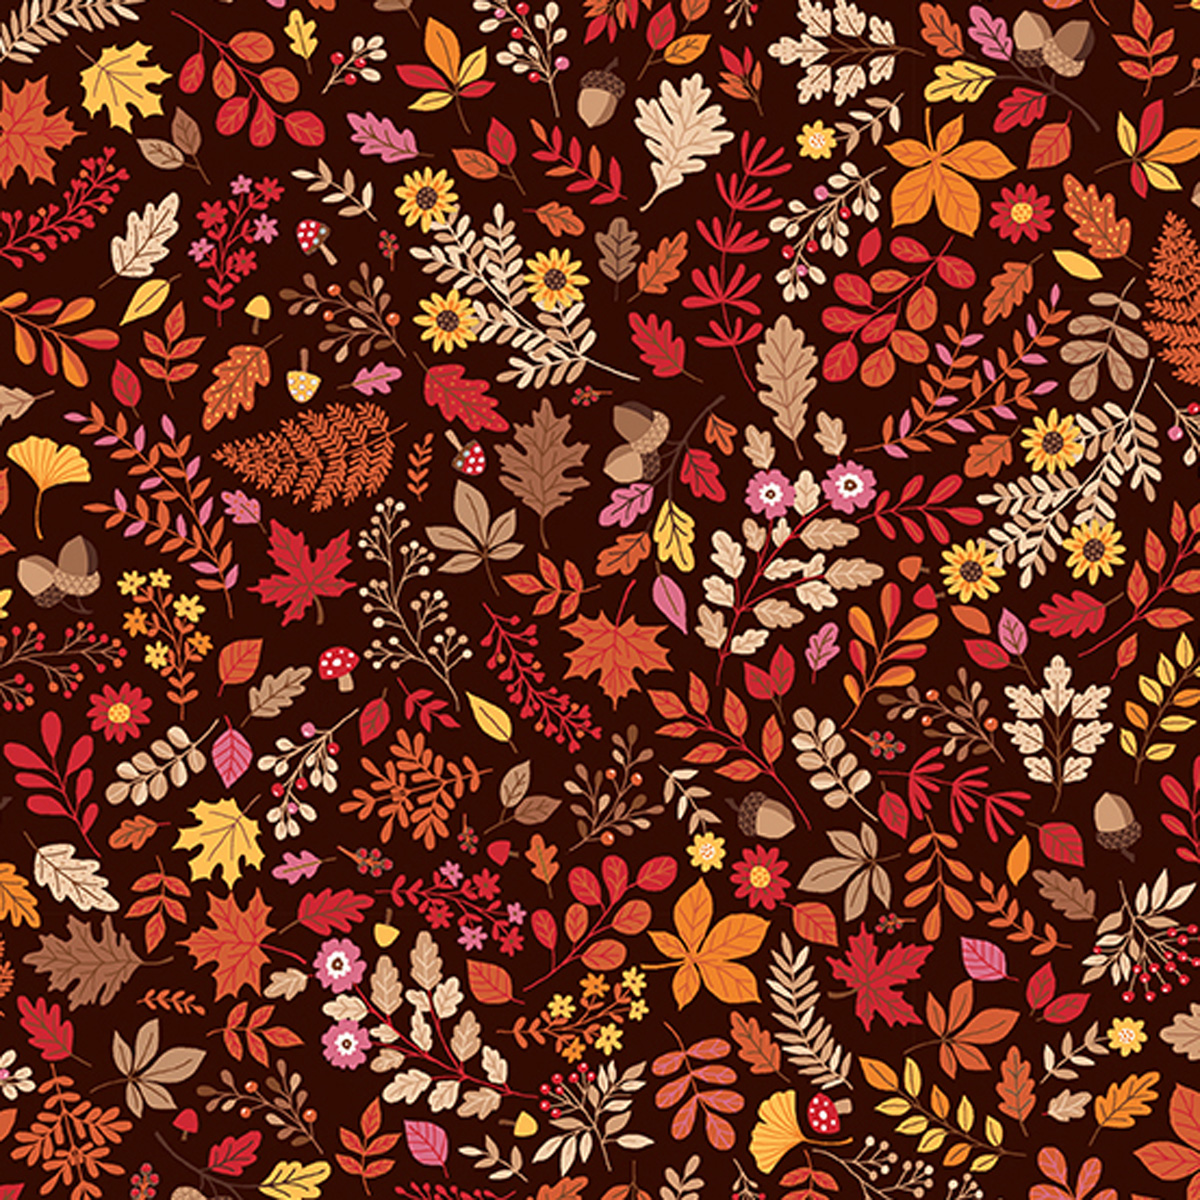 Autumn Days Foliage Brown